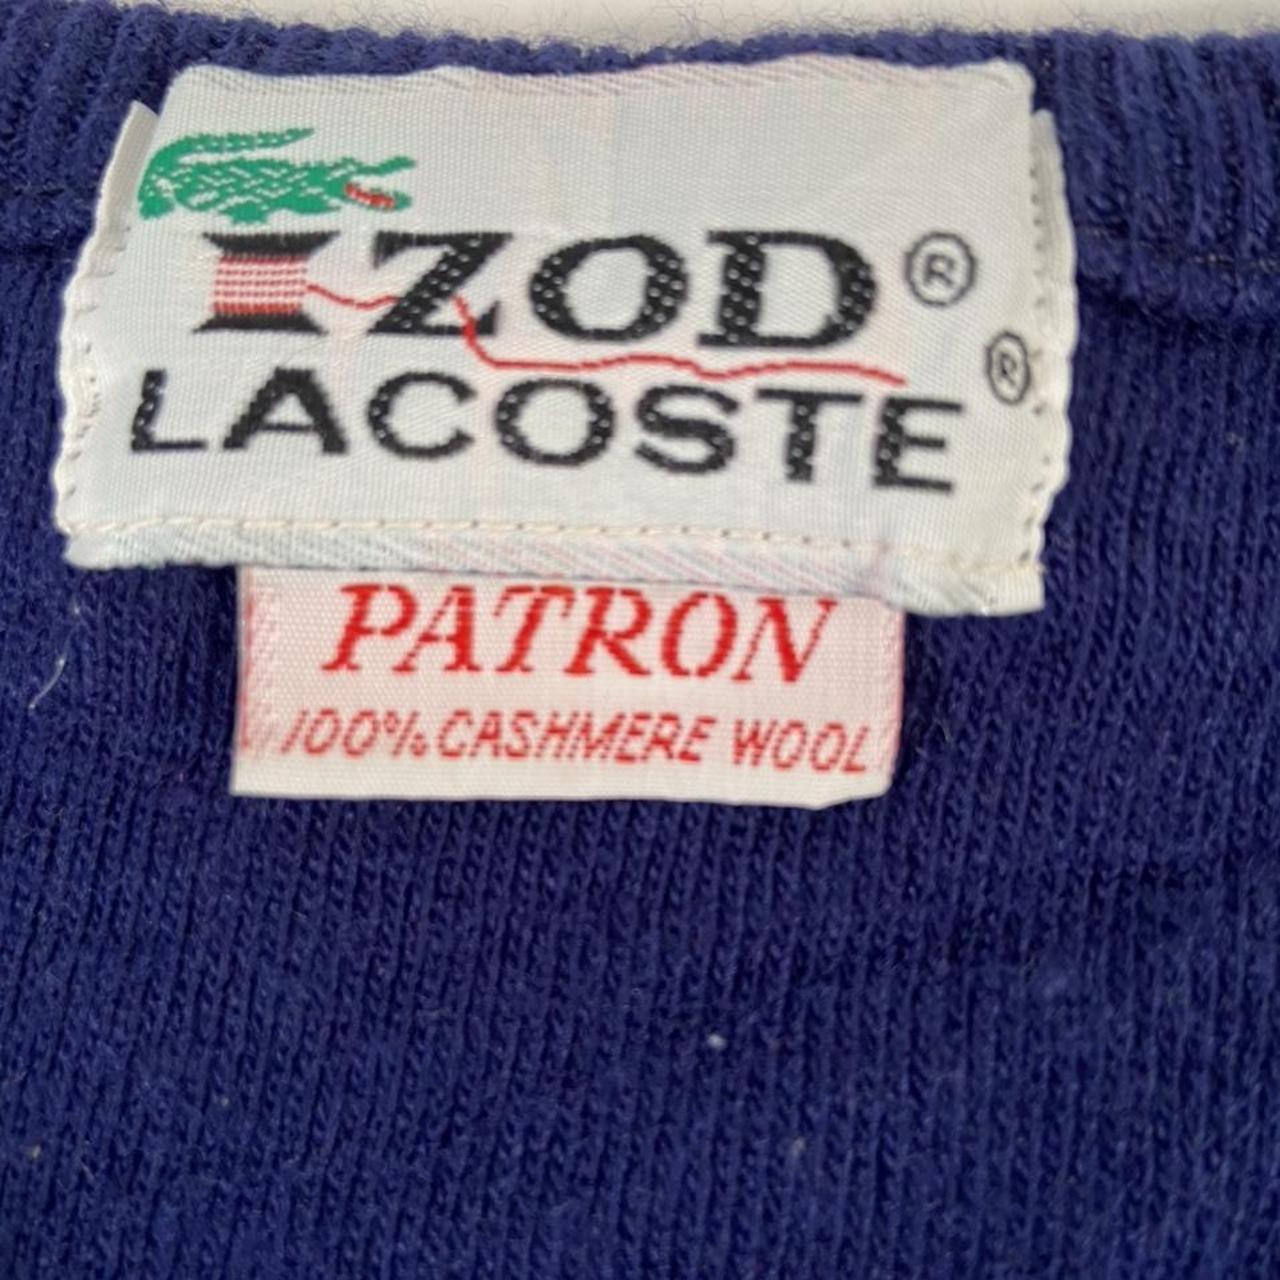 Lacoste IZOD label cashmere V neck cardigan jumper... - Depop